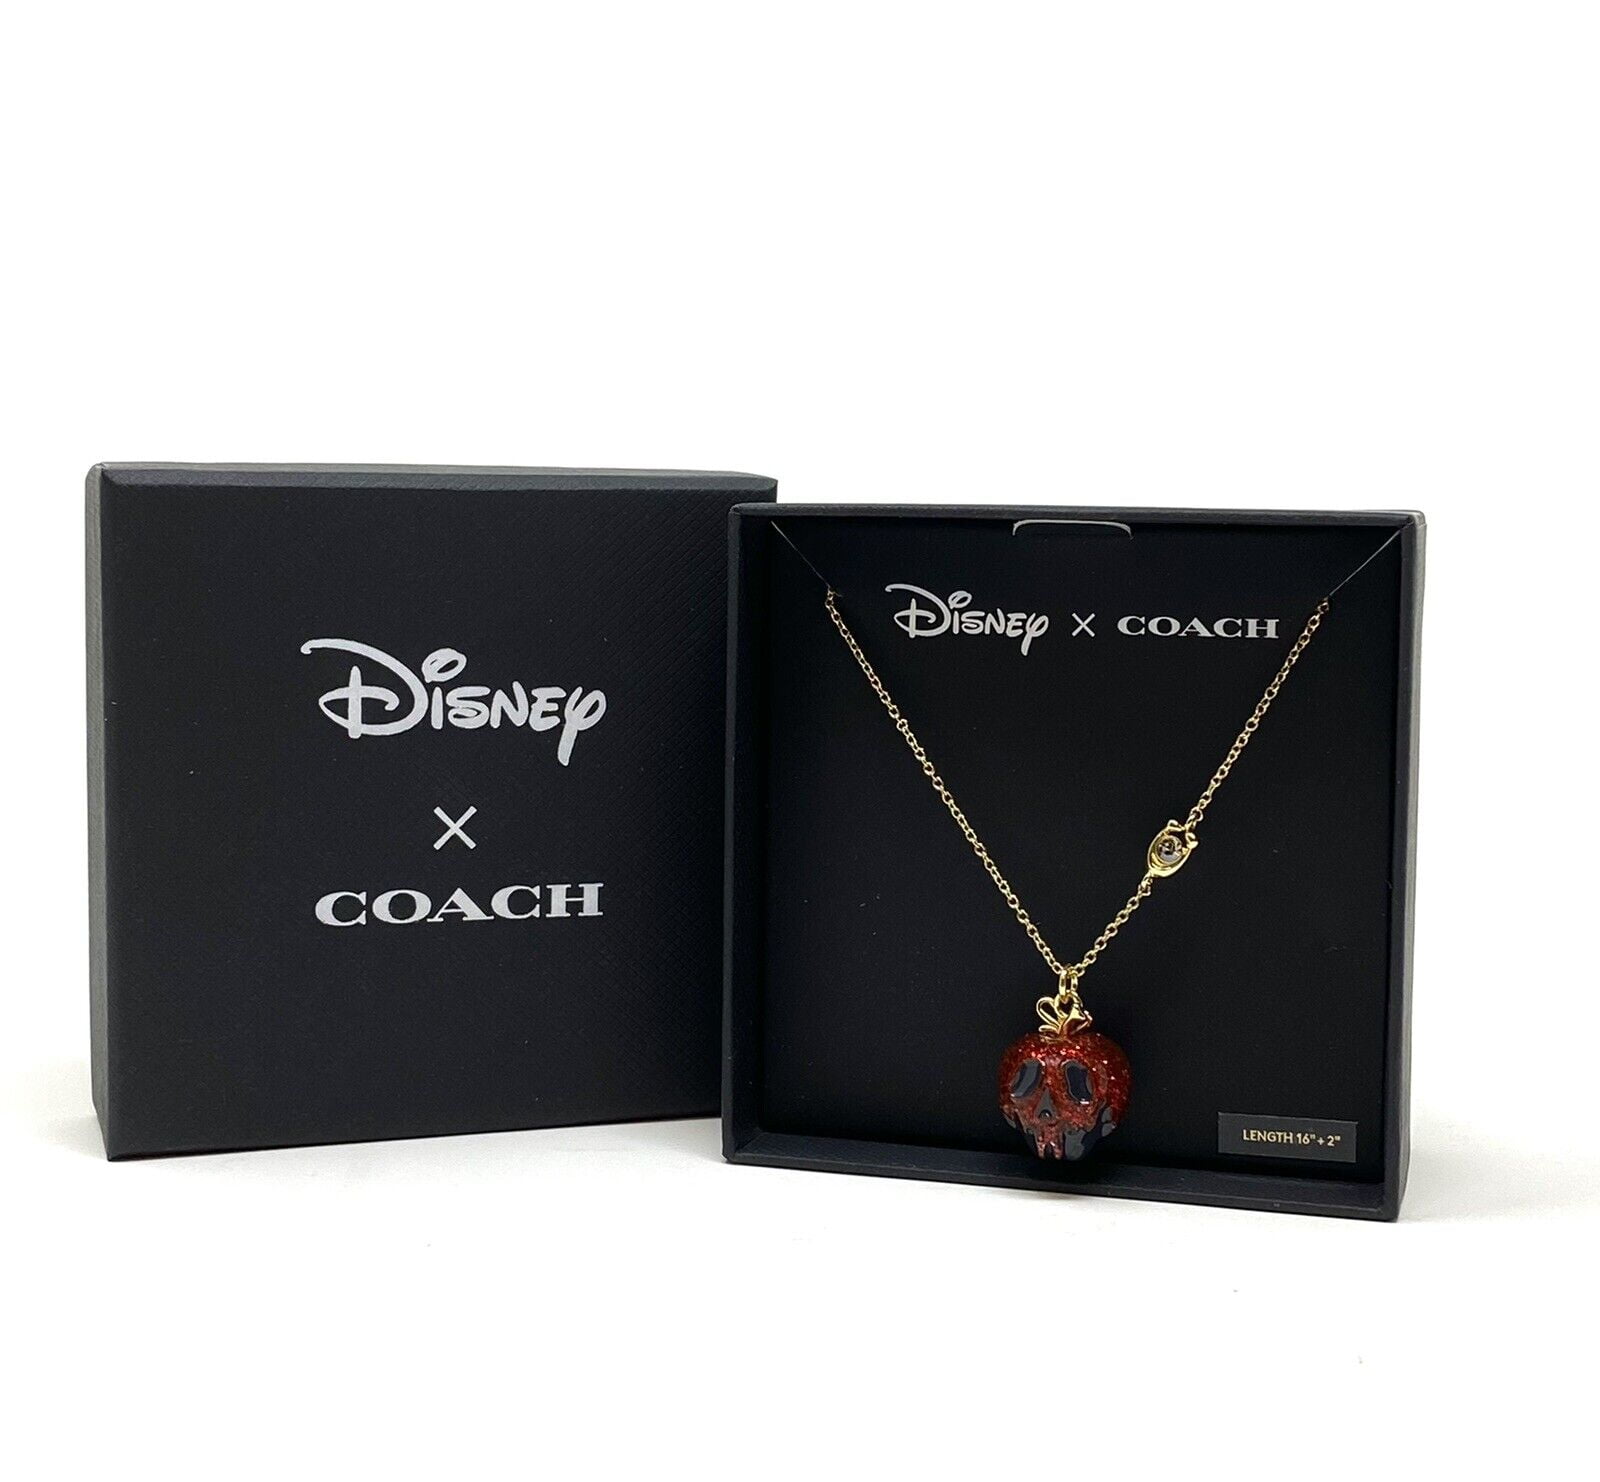 Coach x Disney Villains Collection Coming Soon!